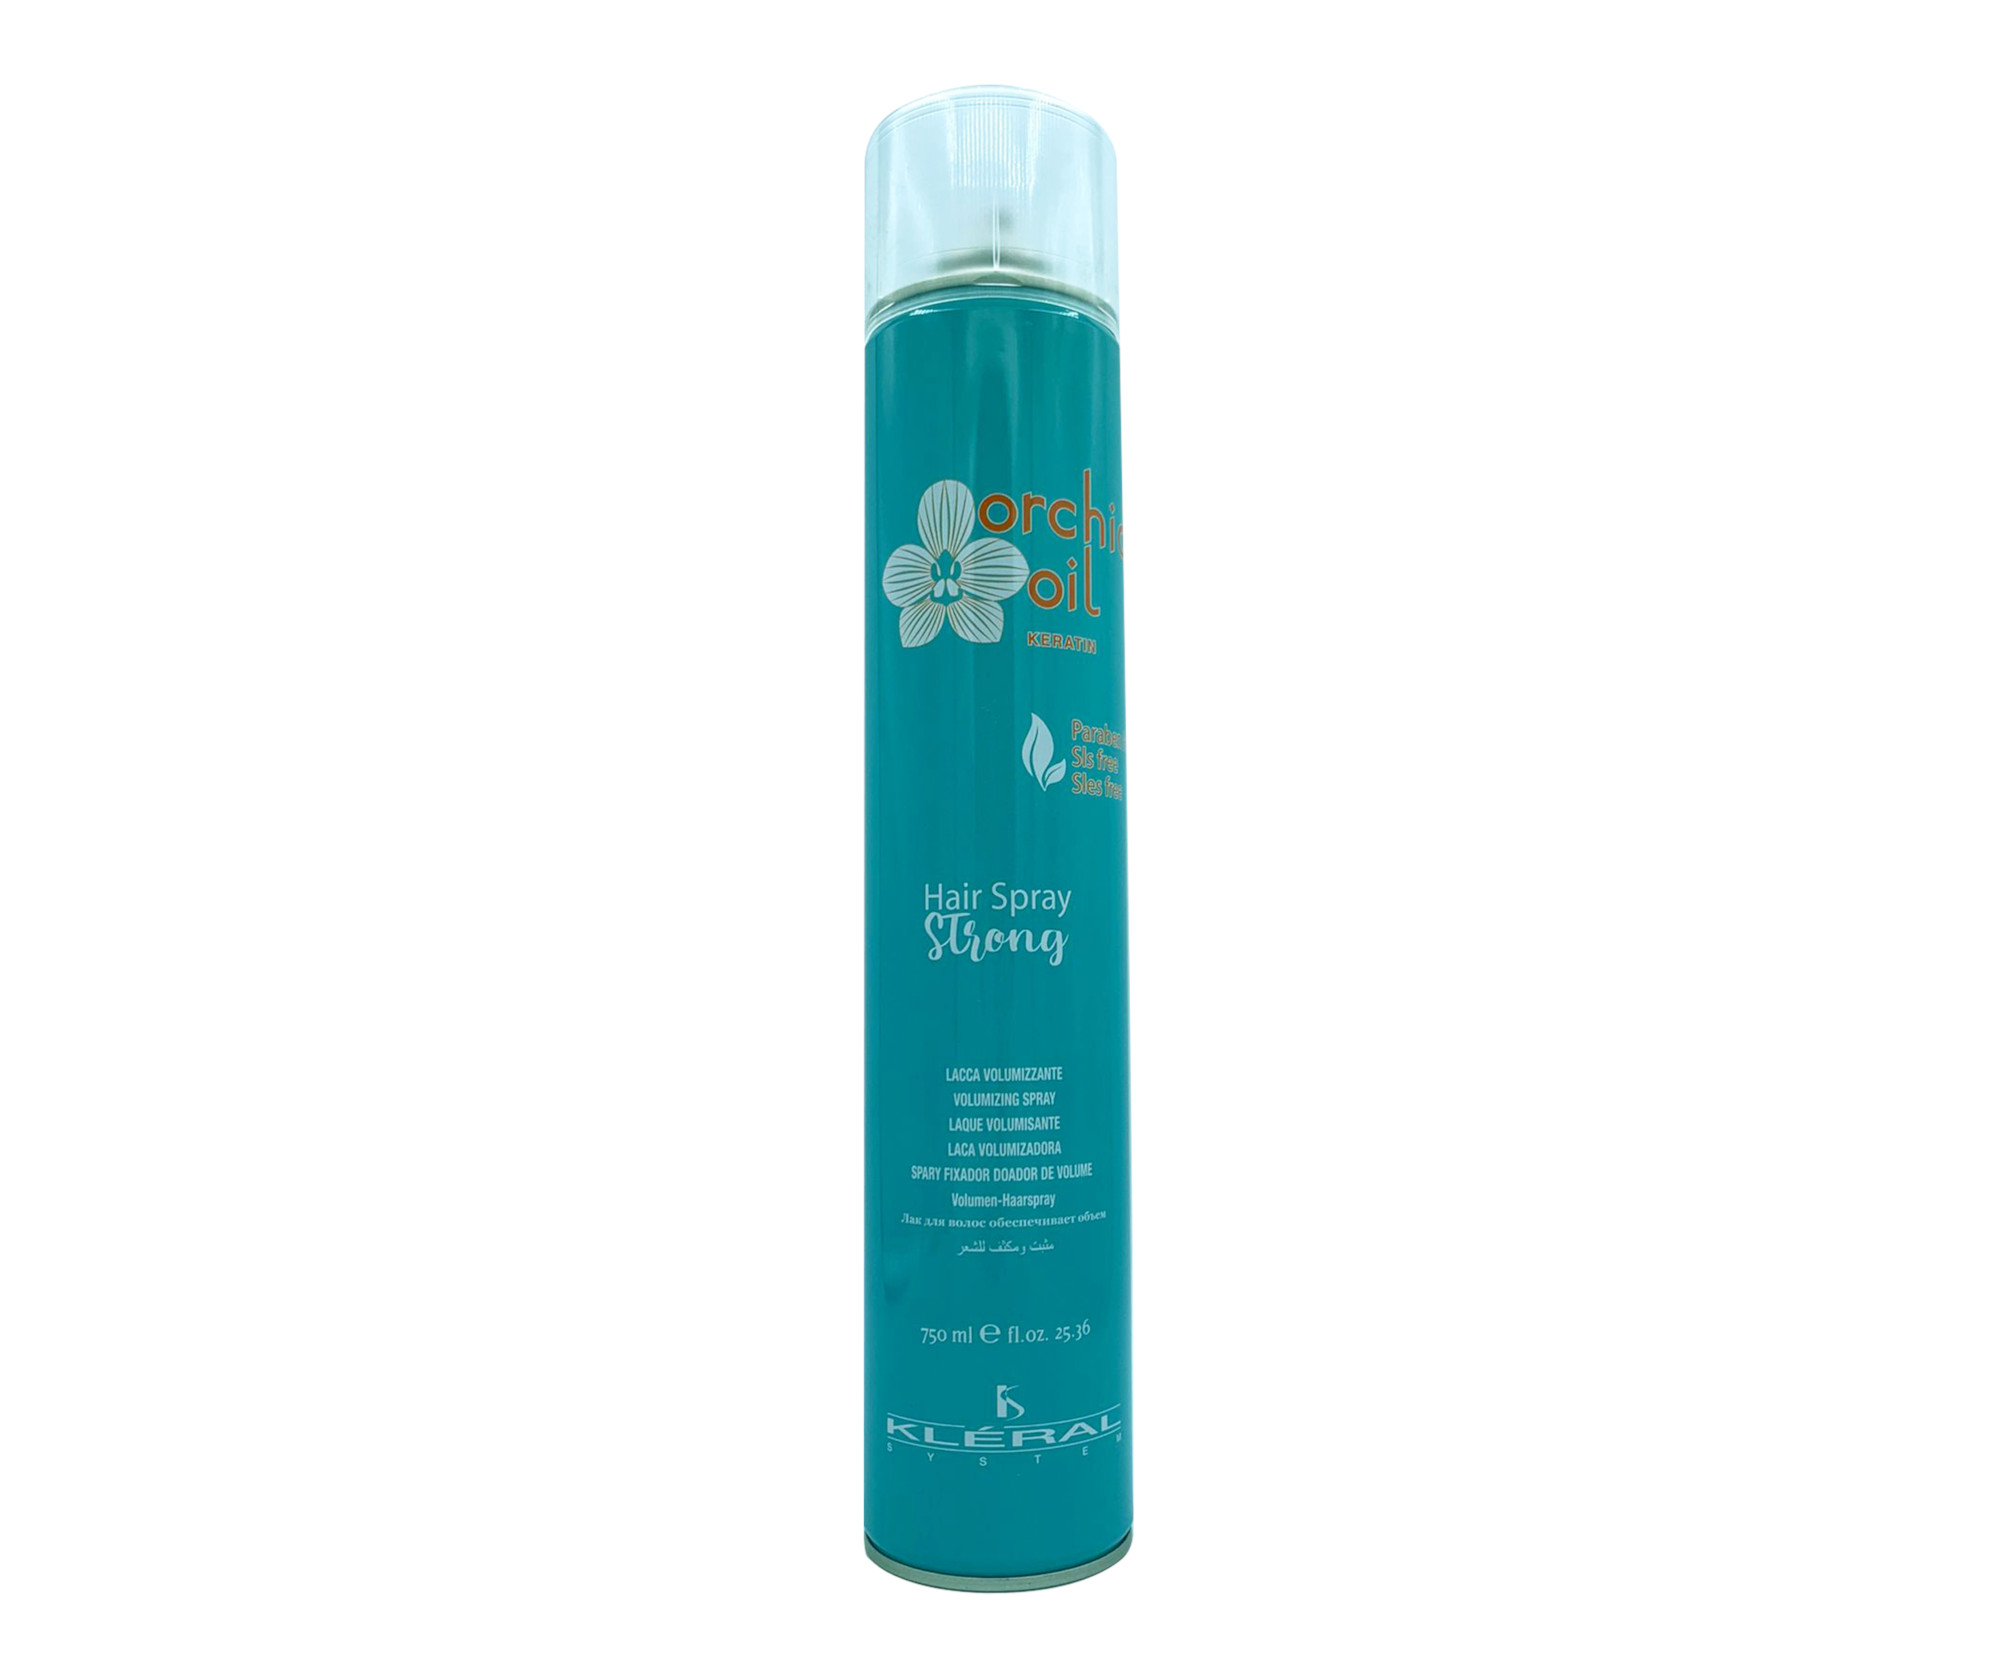 Objemový lak na vlasy se silnou fixací Kléral System Orchid Oil Keratin Hair Spray Strong - 750 ml (010030) + dárek zdarma